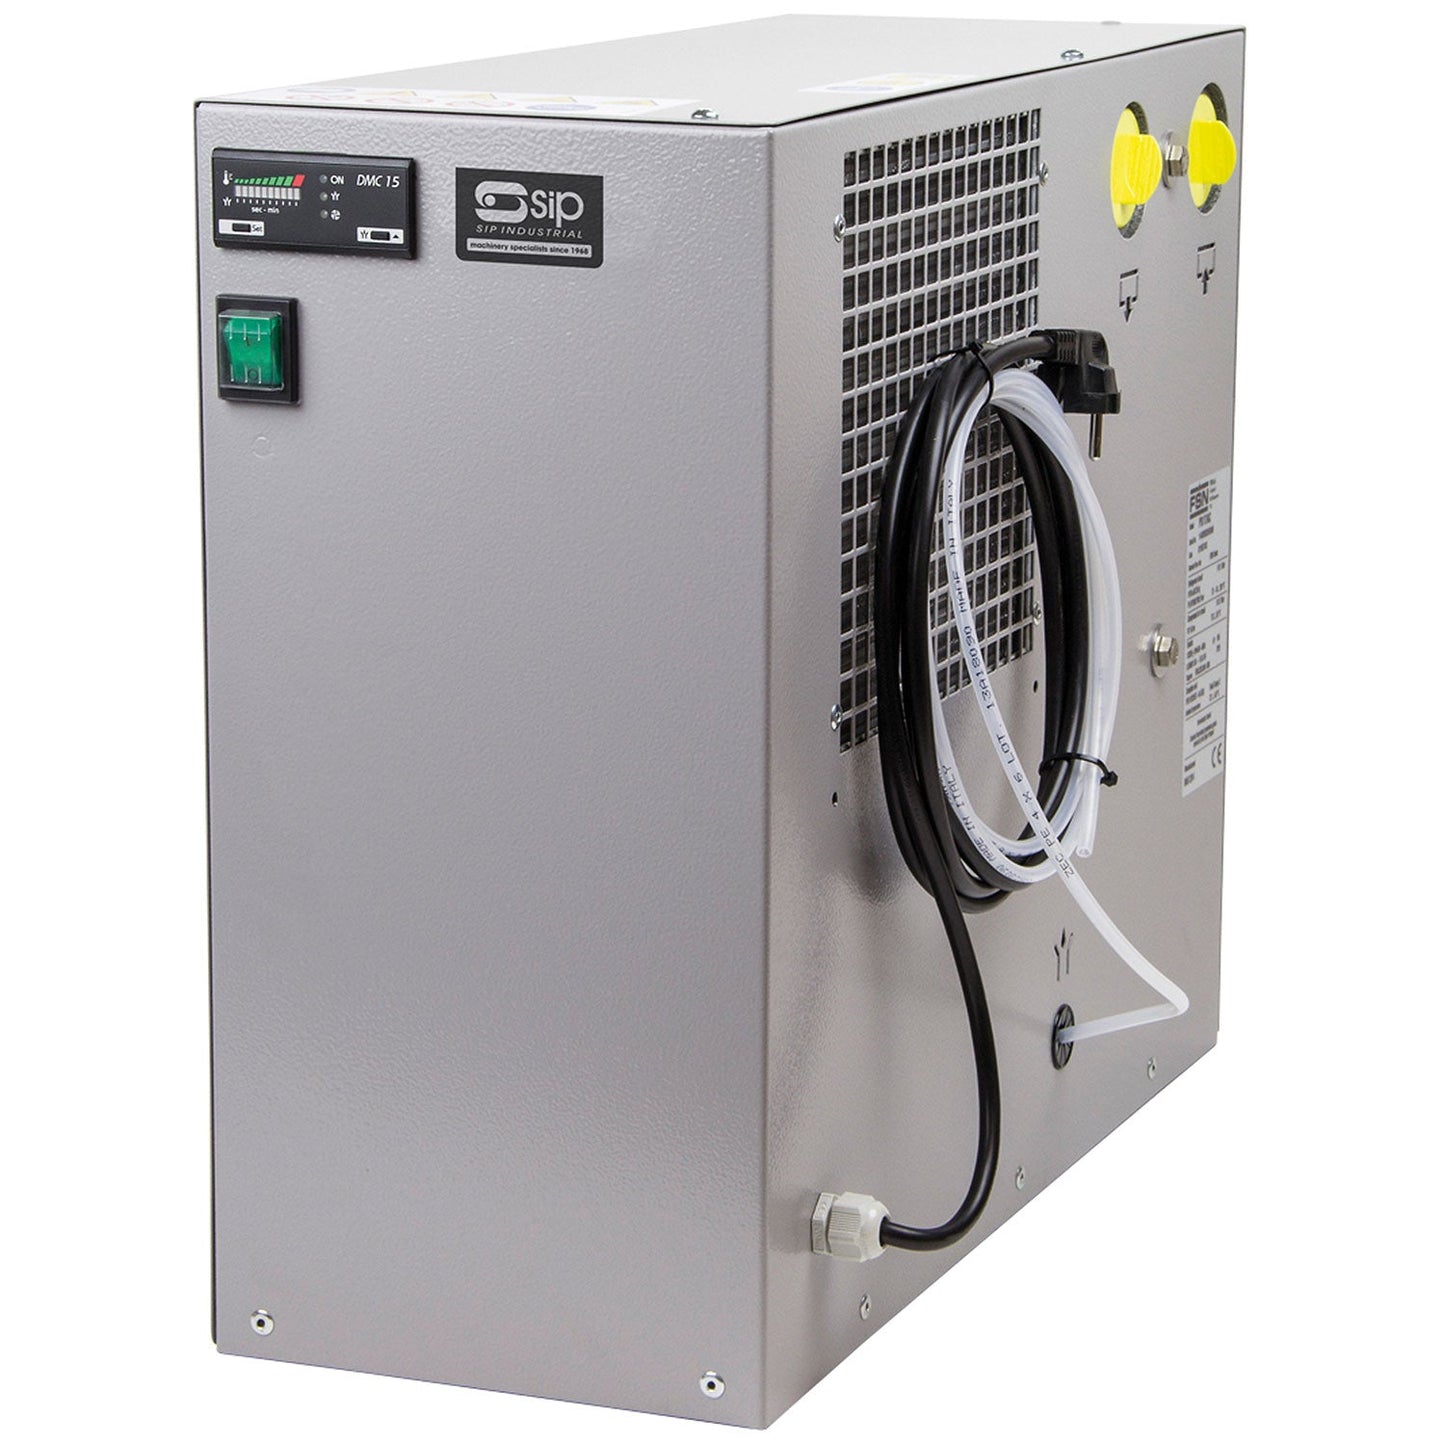 SIP PS17 Compressed Air Dryer, Sip Industrial